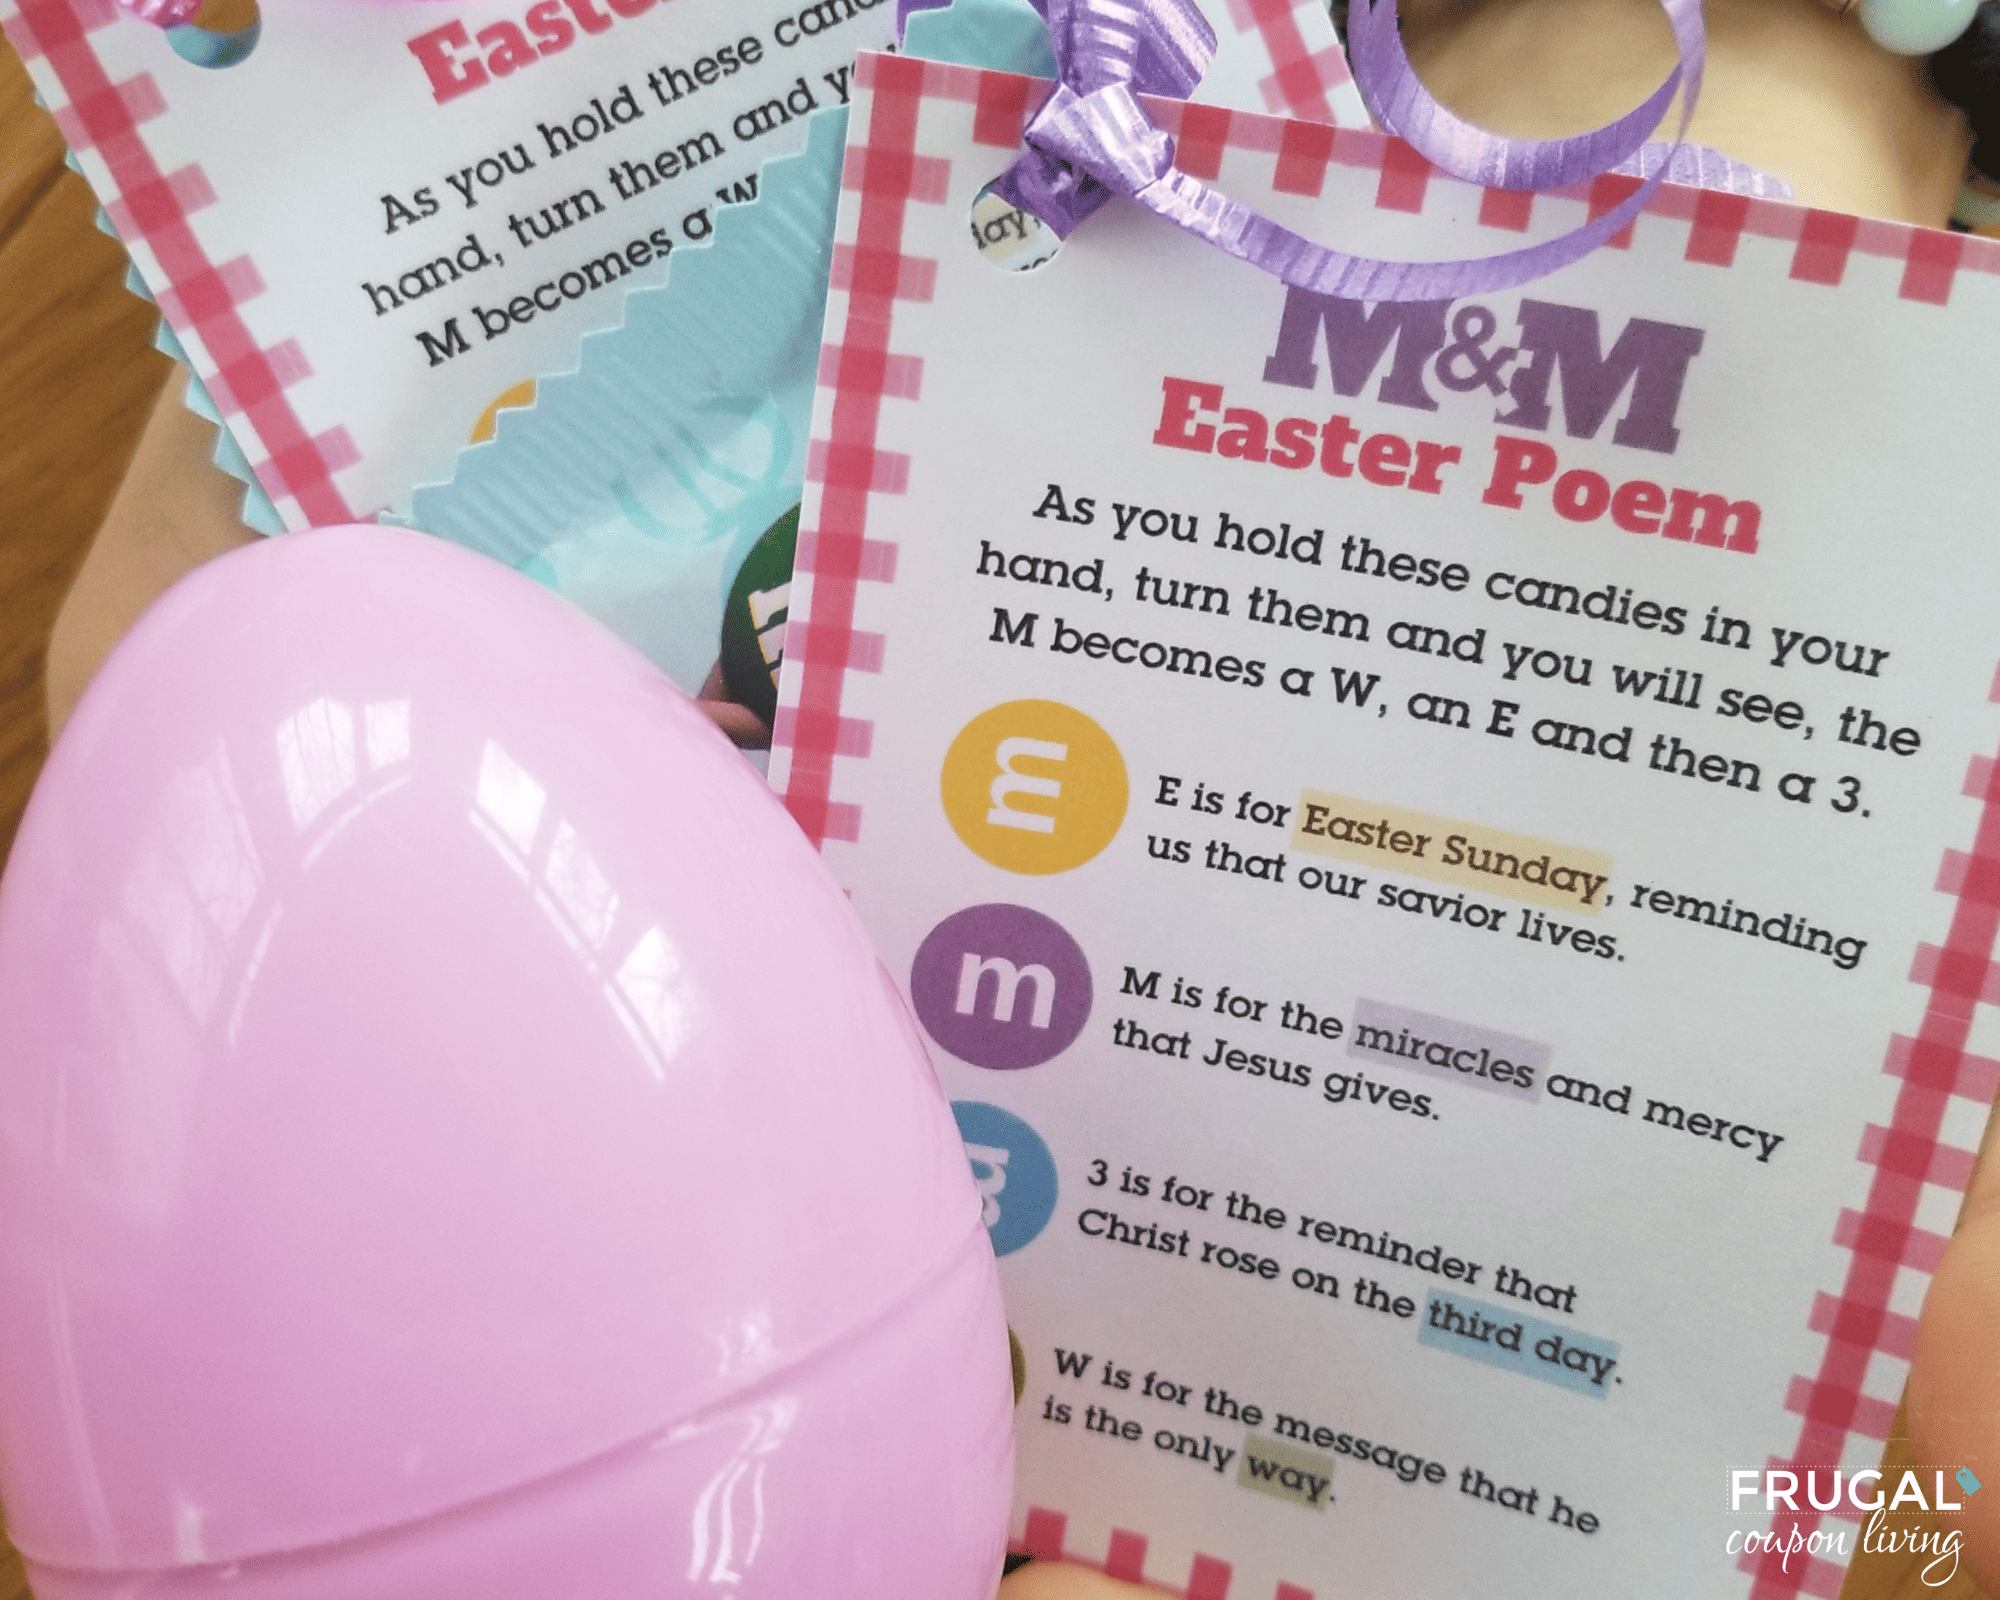 M&M ester poem printable craft for kids